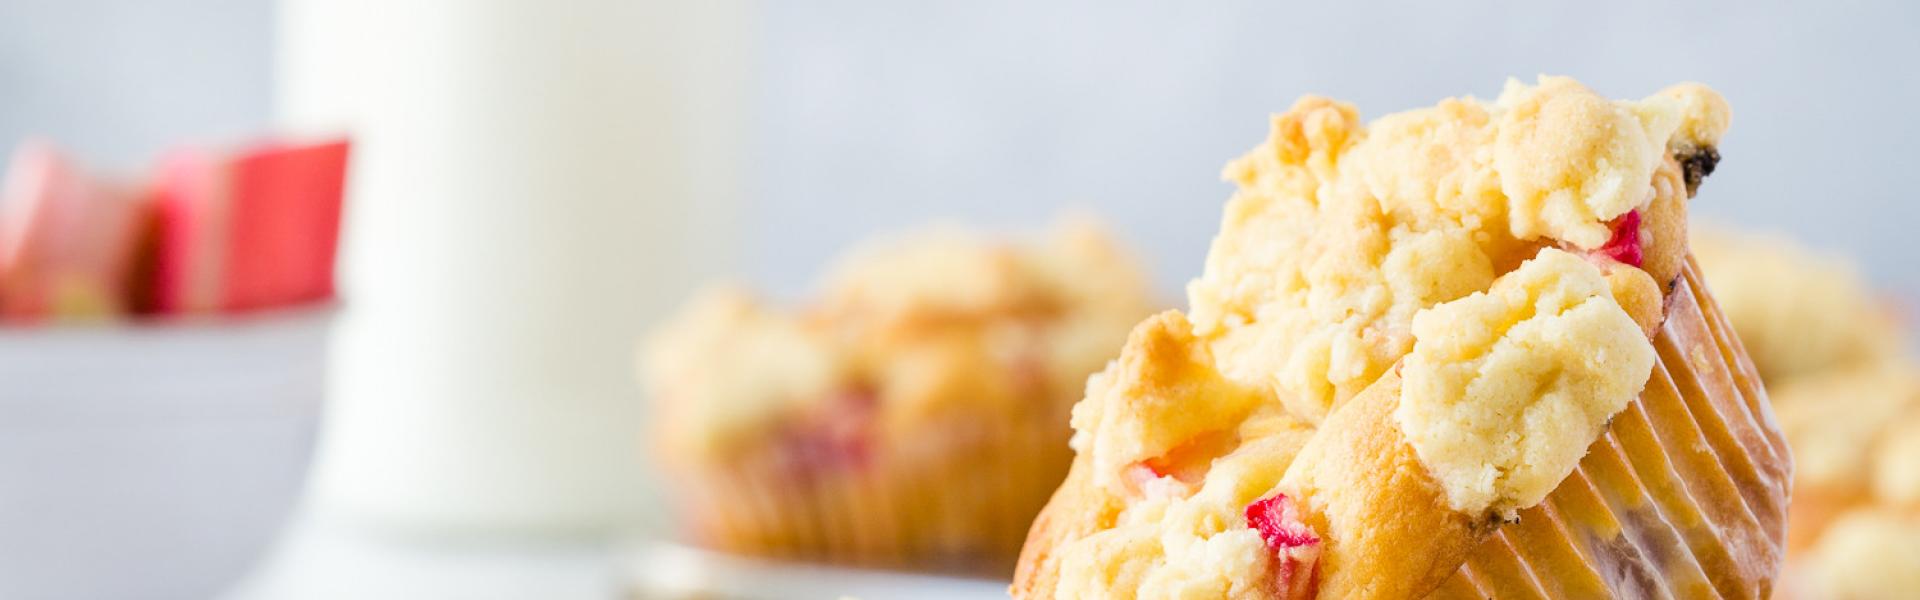 Rhabarber-Muffins mit Streuseln und Joghurt | Simply Yummy